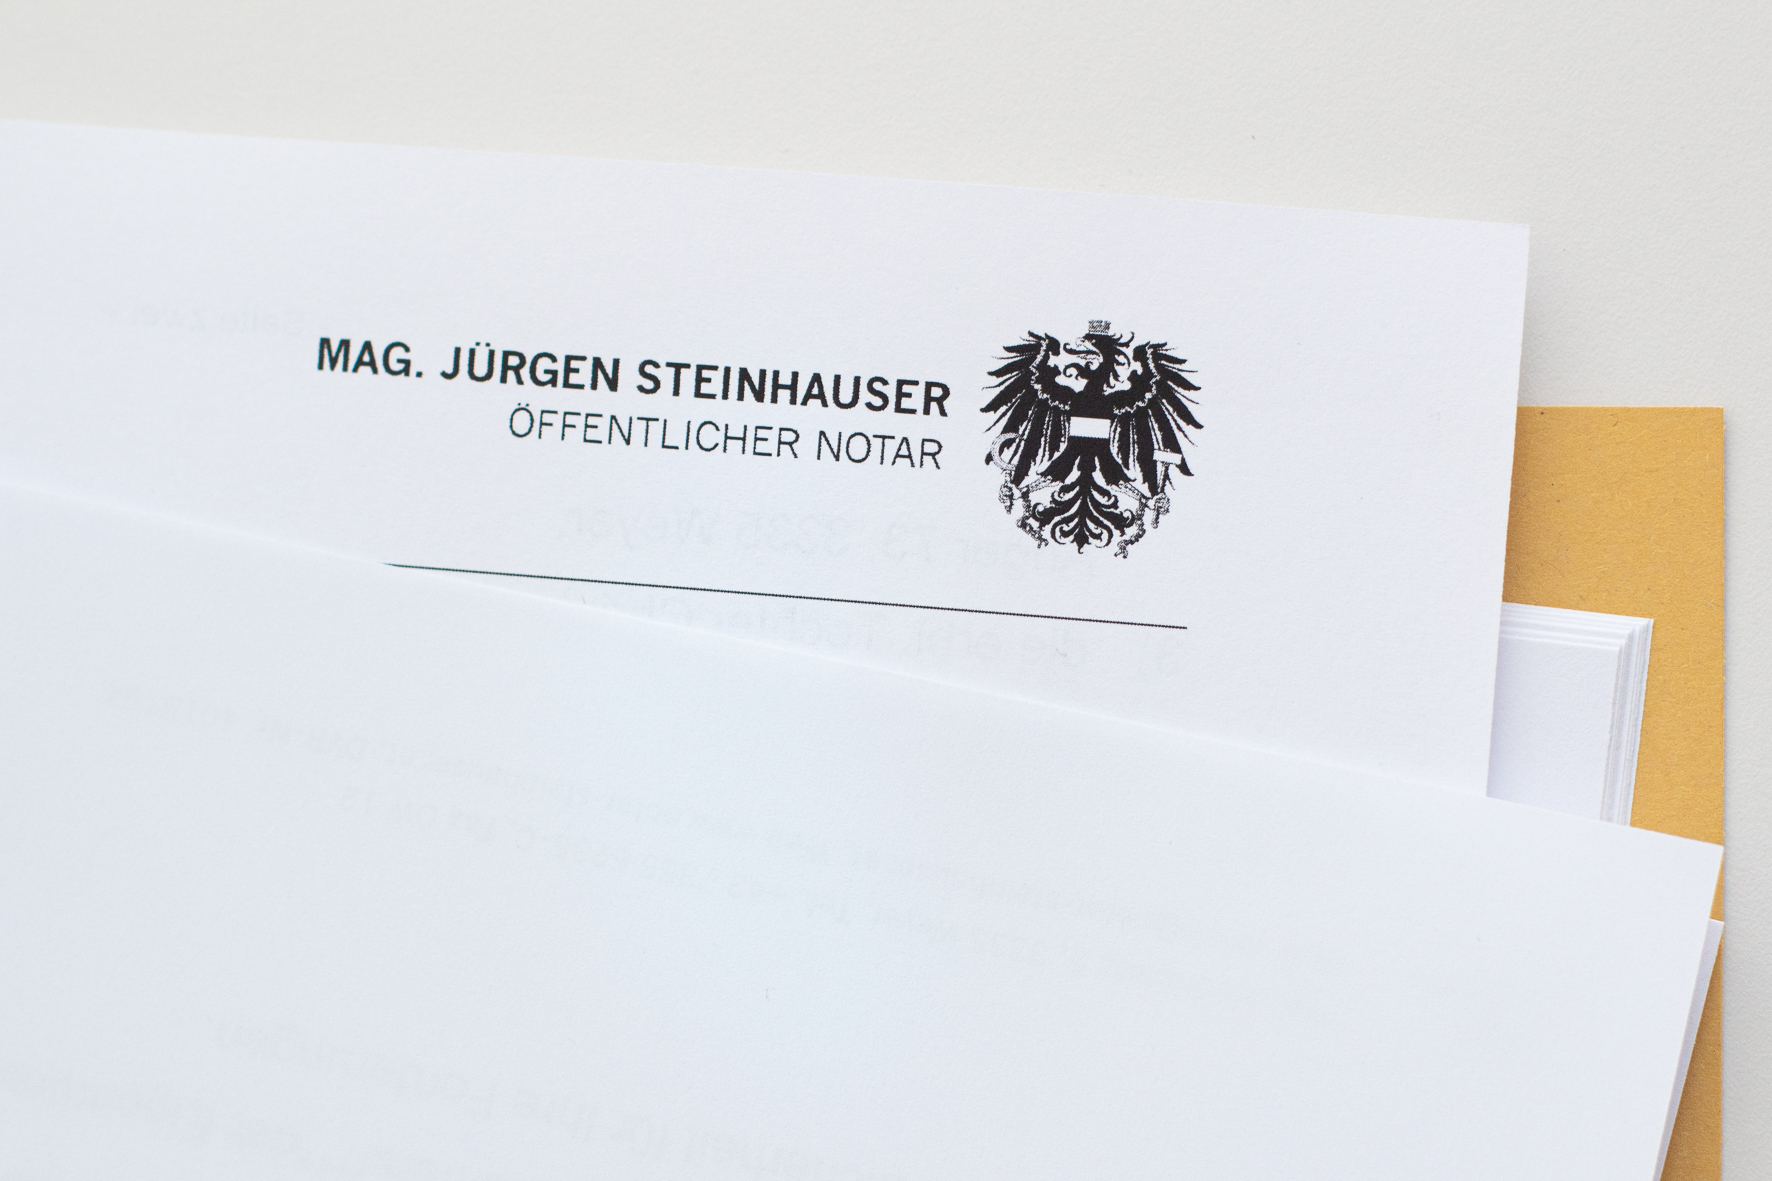 Notariat Weyer Mag. Jürgen Steinhauser